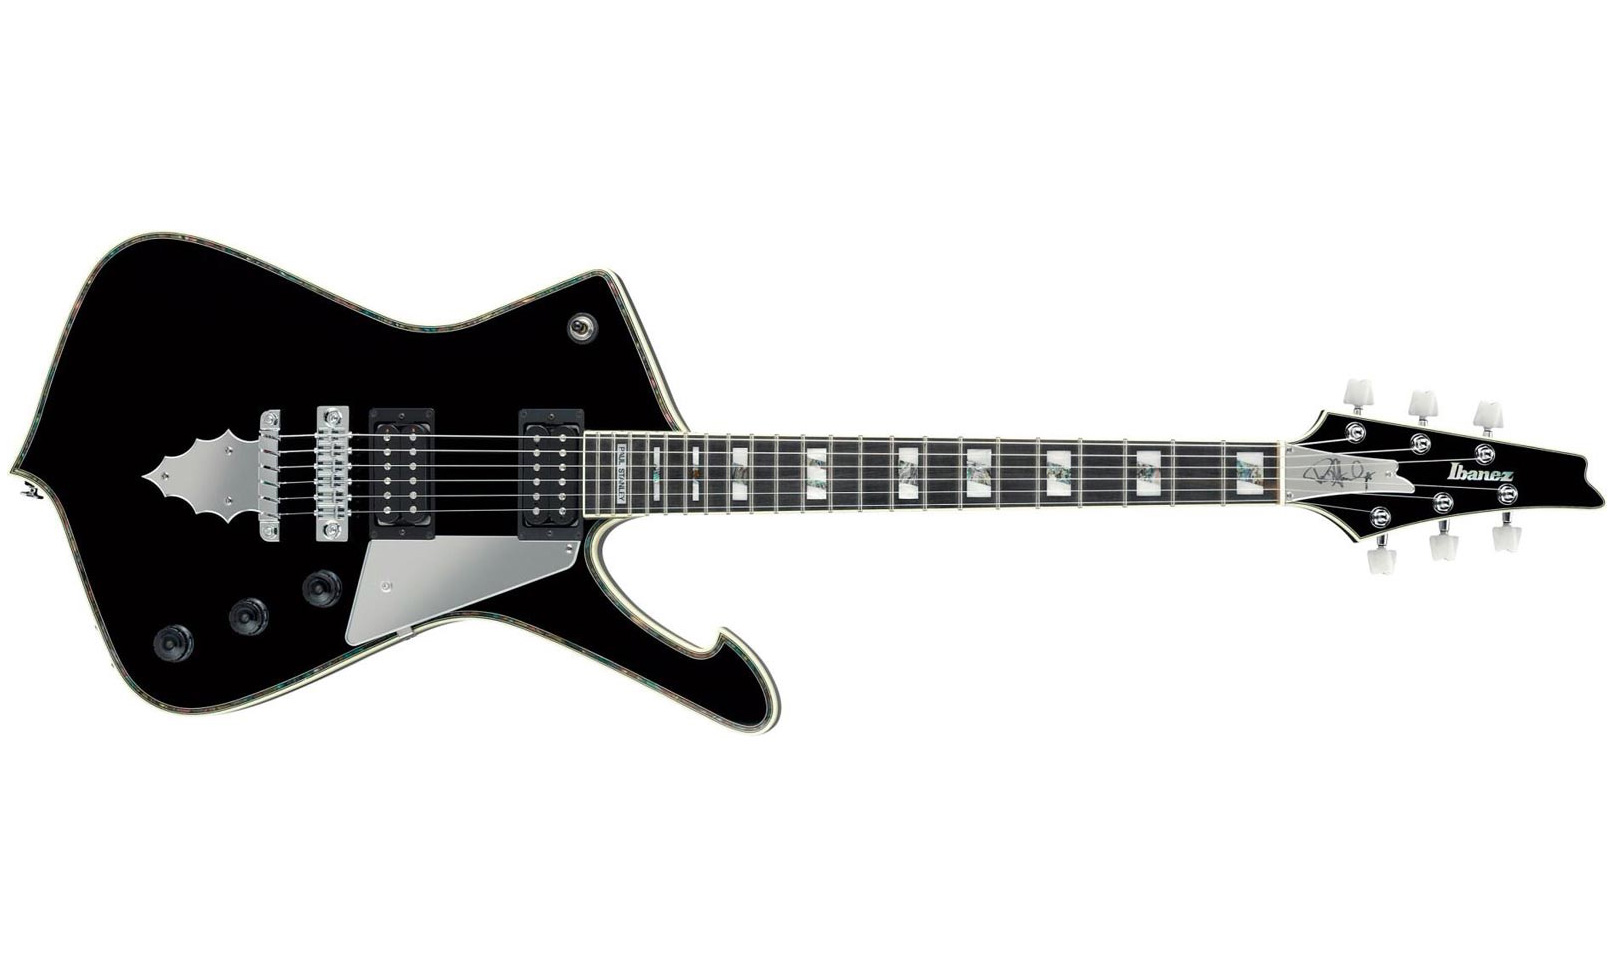 Ibanez Paul Stanley Ps10 Bk Japon Signature Hh Seymour Duncan Ht Eb - Black - E-Gitarre aus Metall - Variation 1